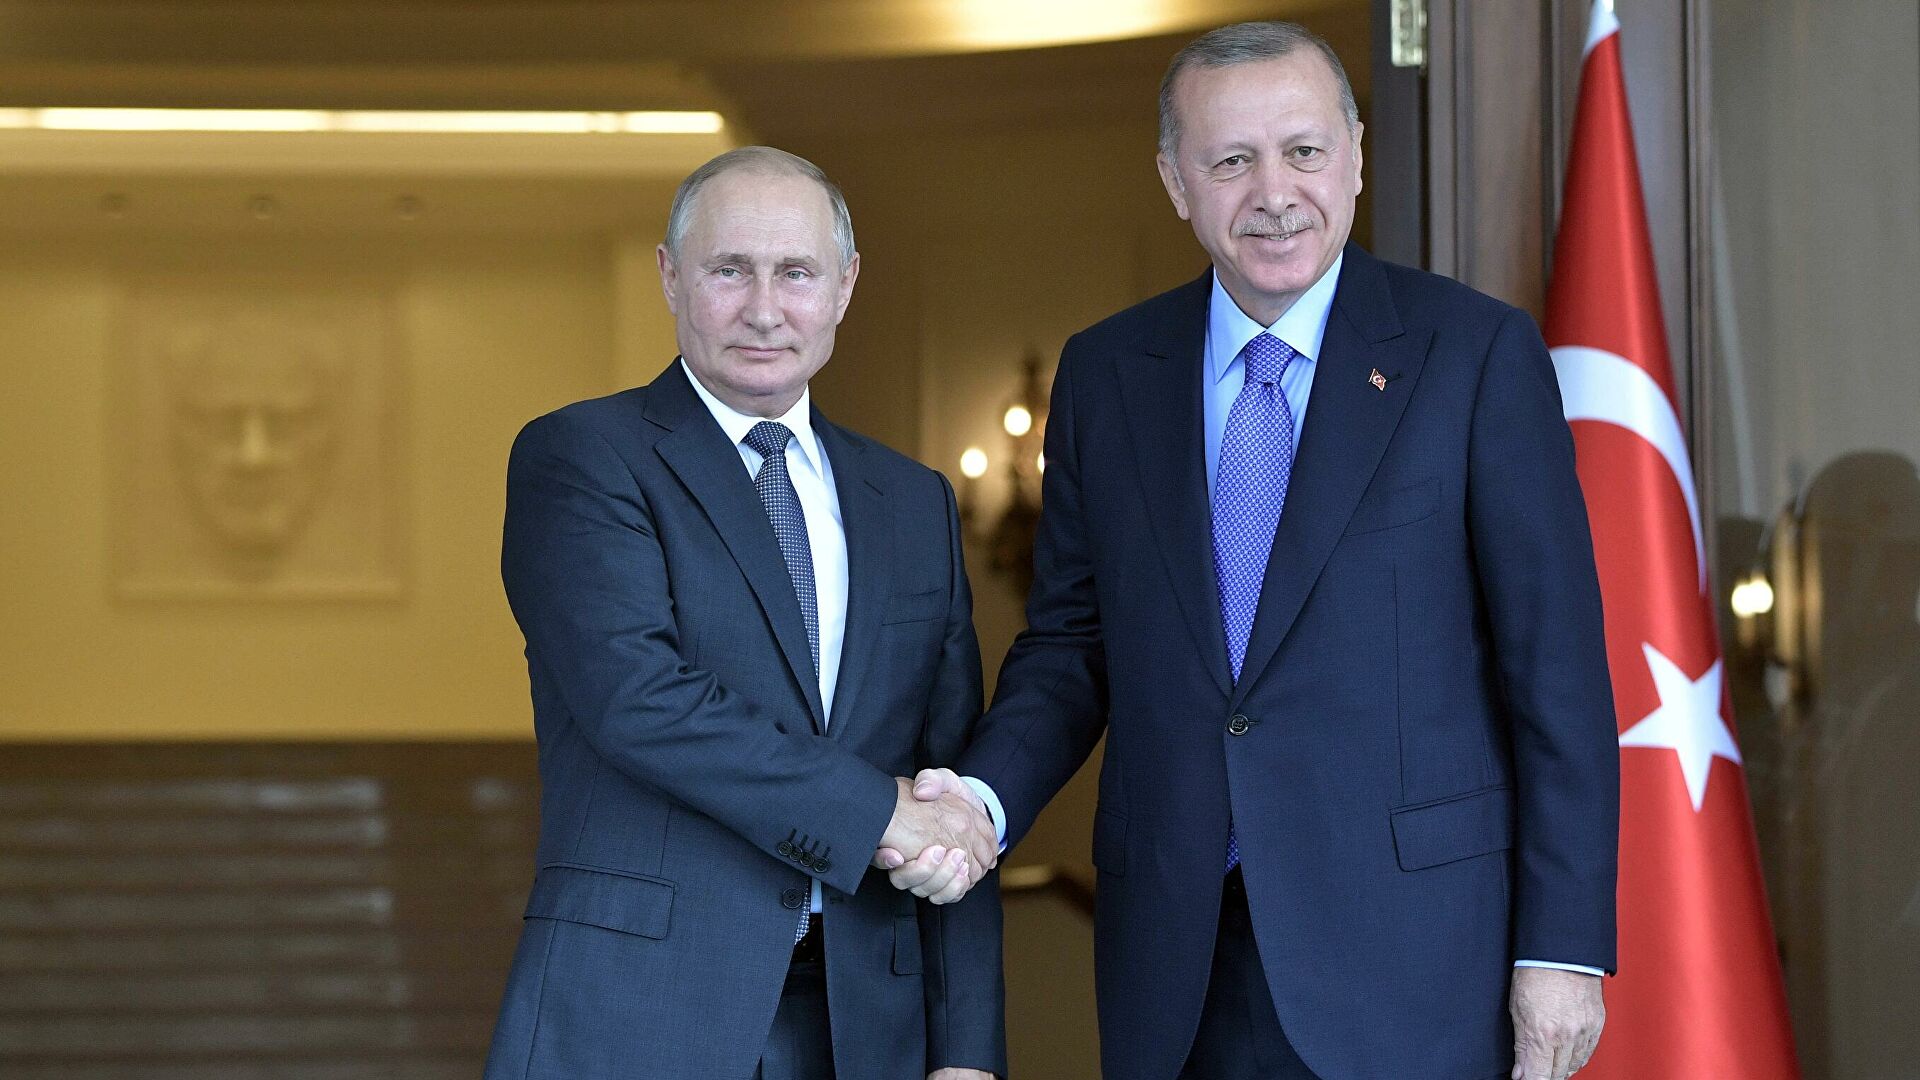 СМИ: Визит Путина в Турцию отложен